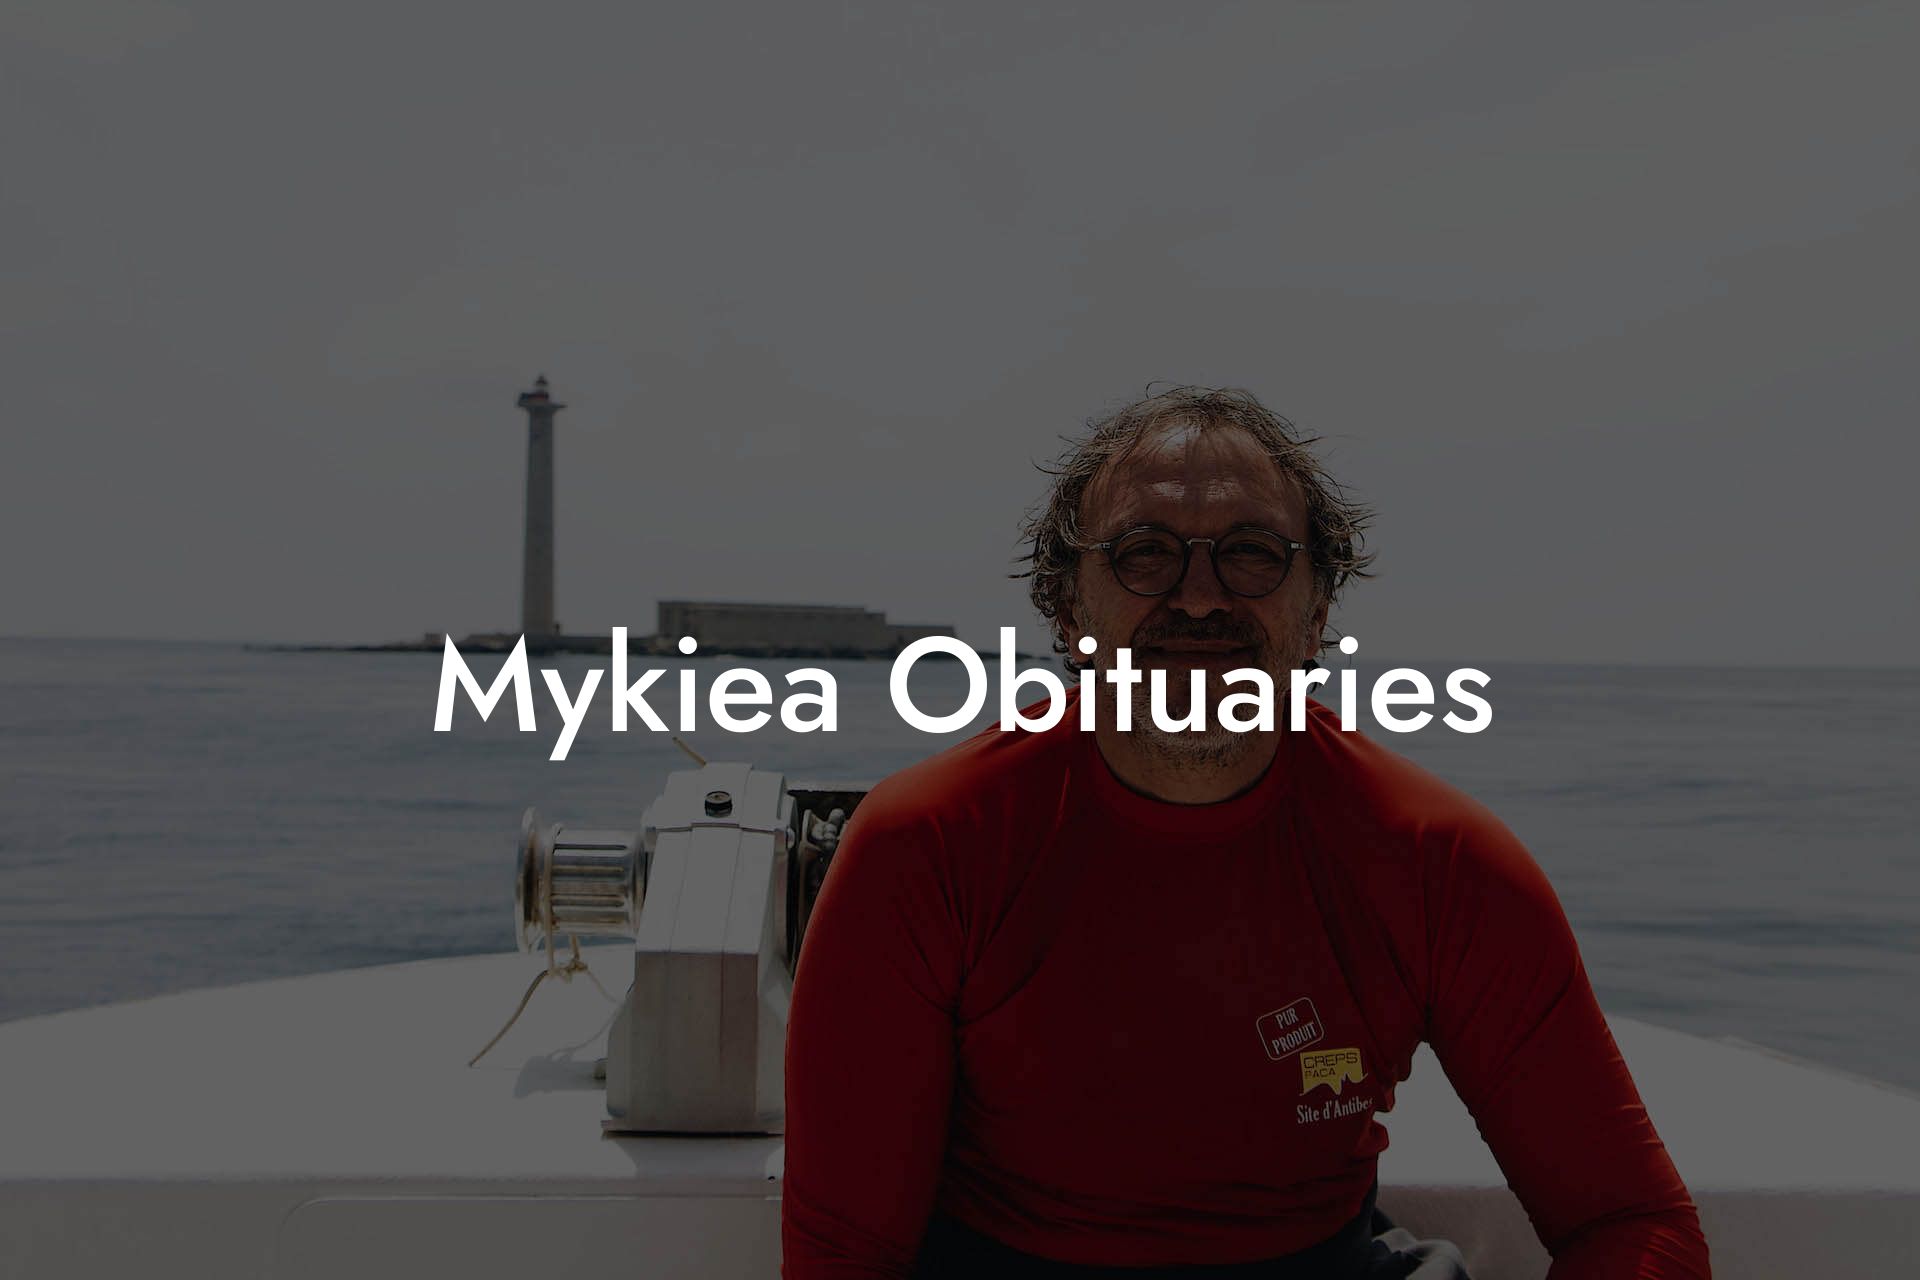 Mykiea Obituaries